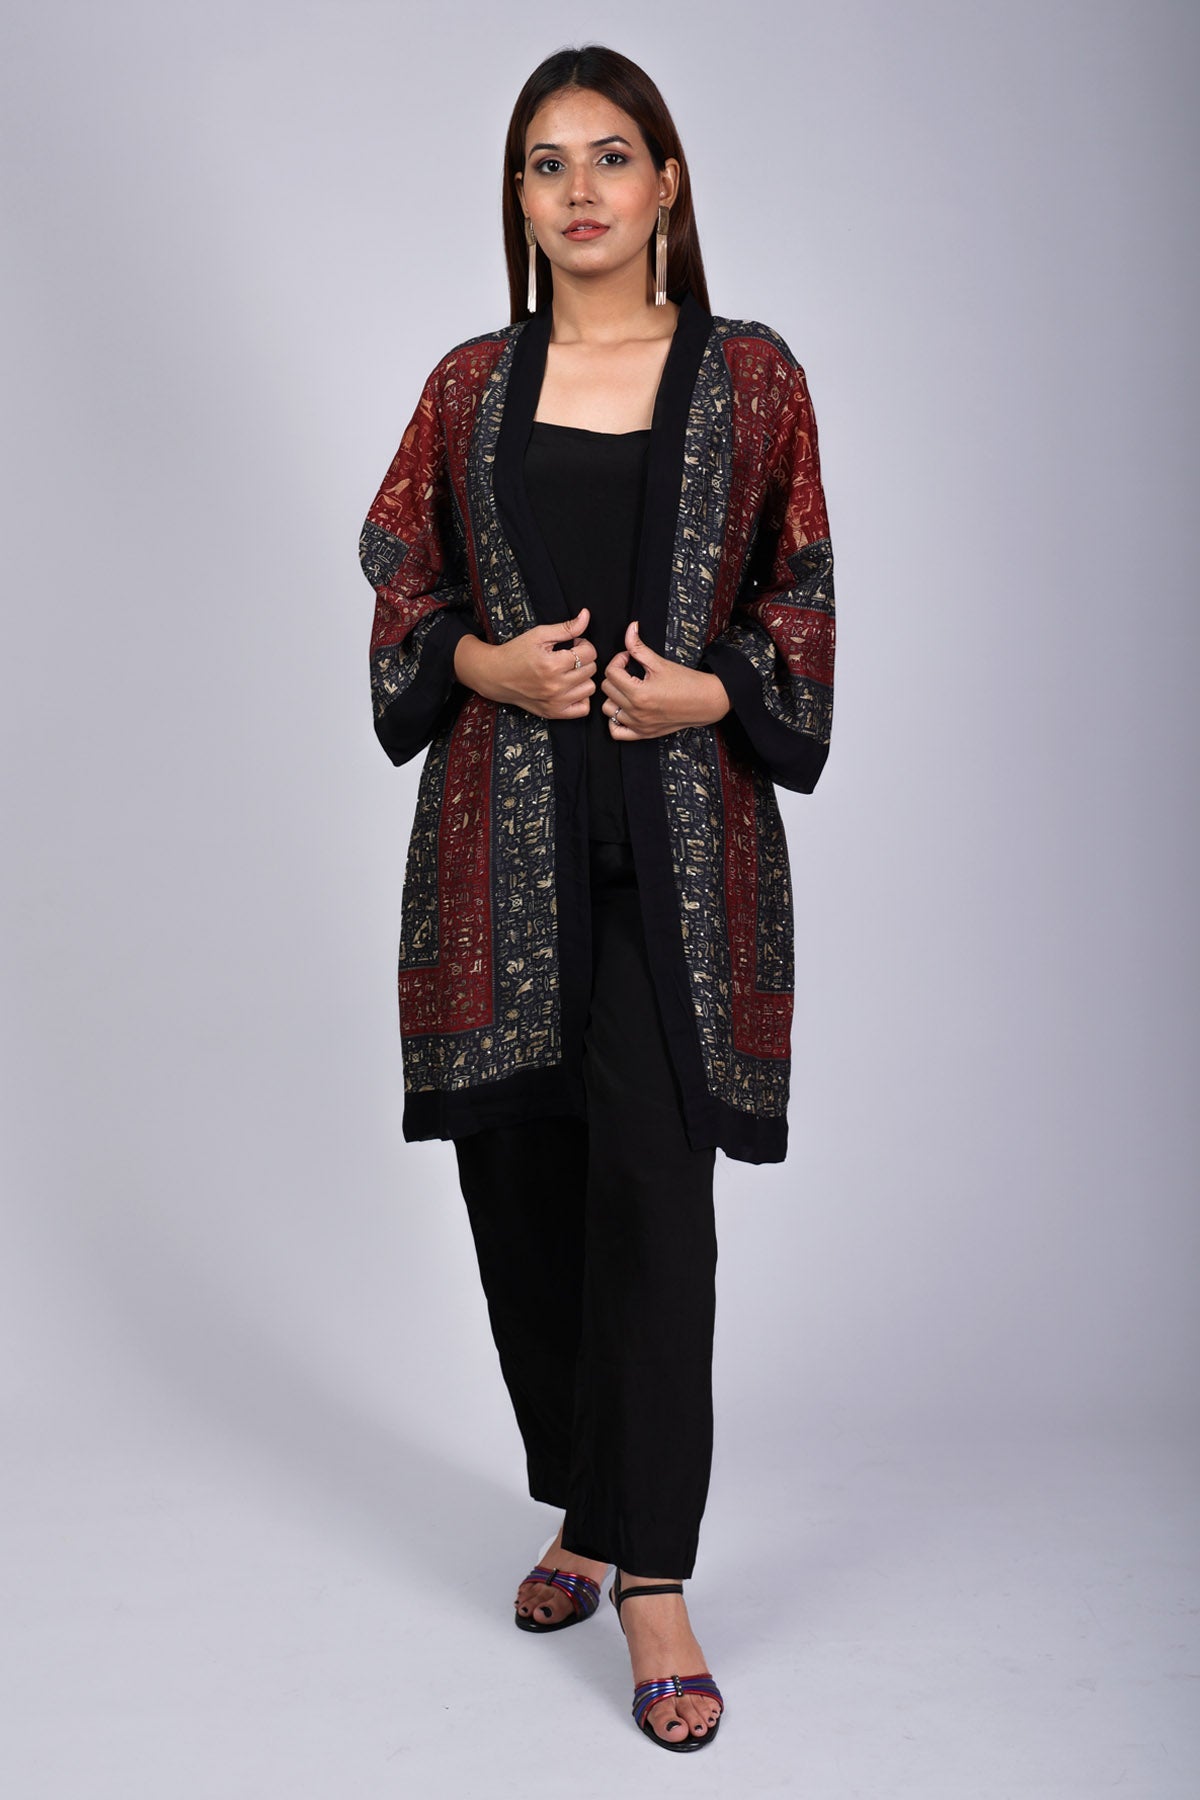 Etti Kapoor Red & Black Printed Shrug Set for women online at ScrollnShops